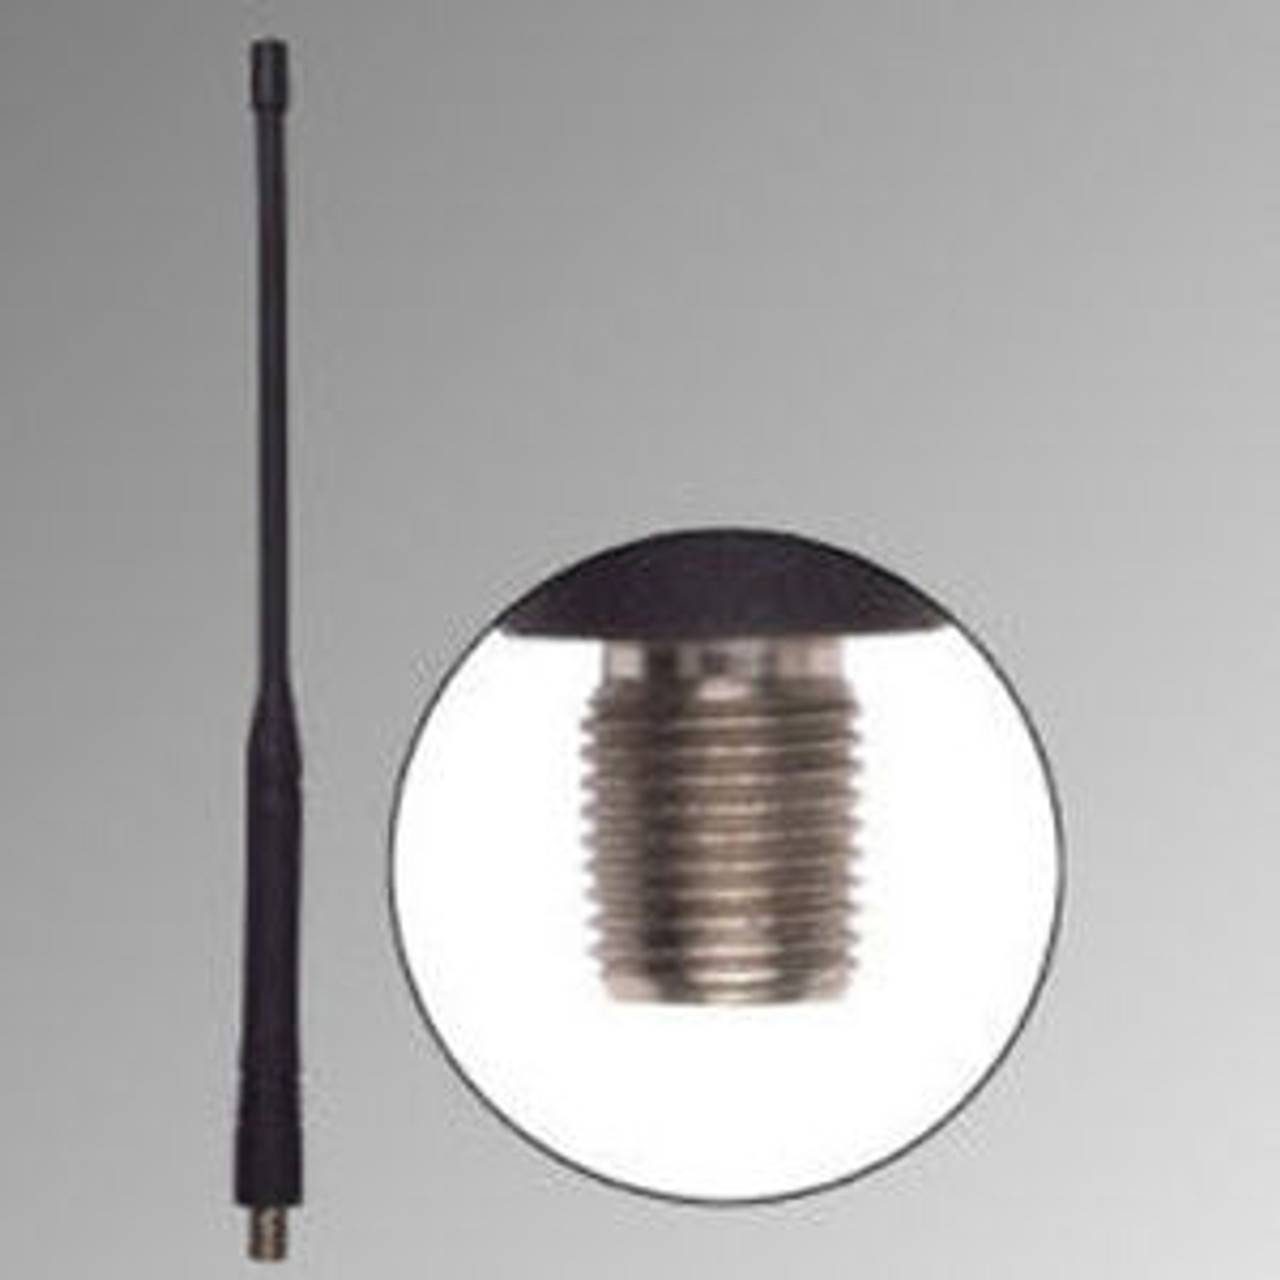 Bendix King LPU Long Range Antenna - 10.5", VHF, 155-165 MHz